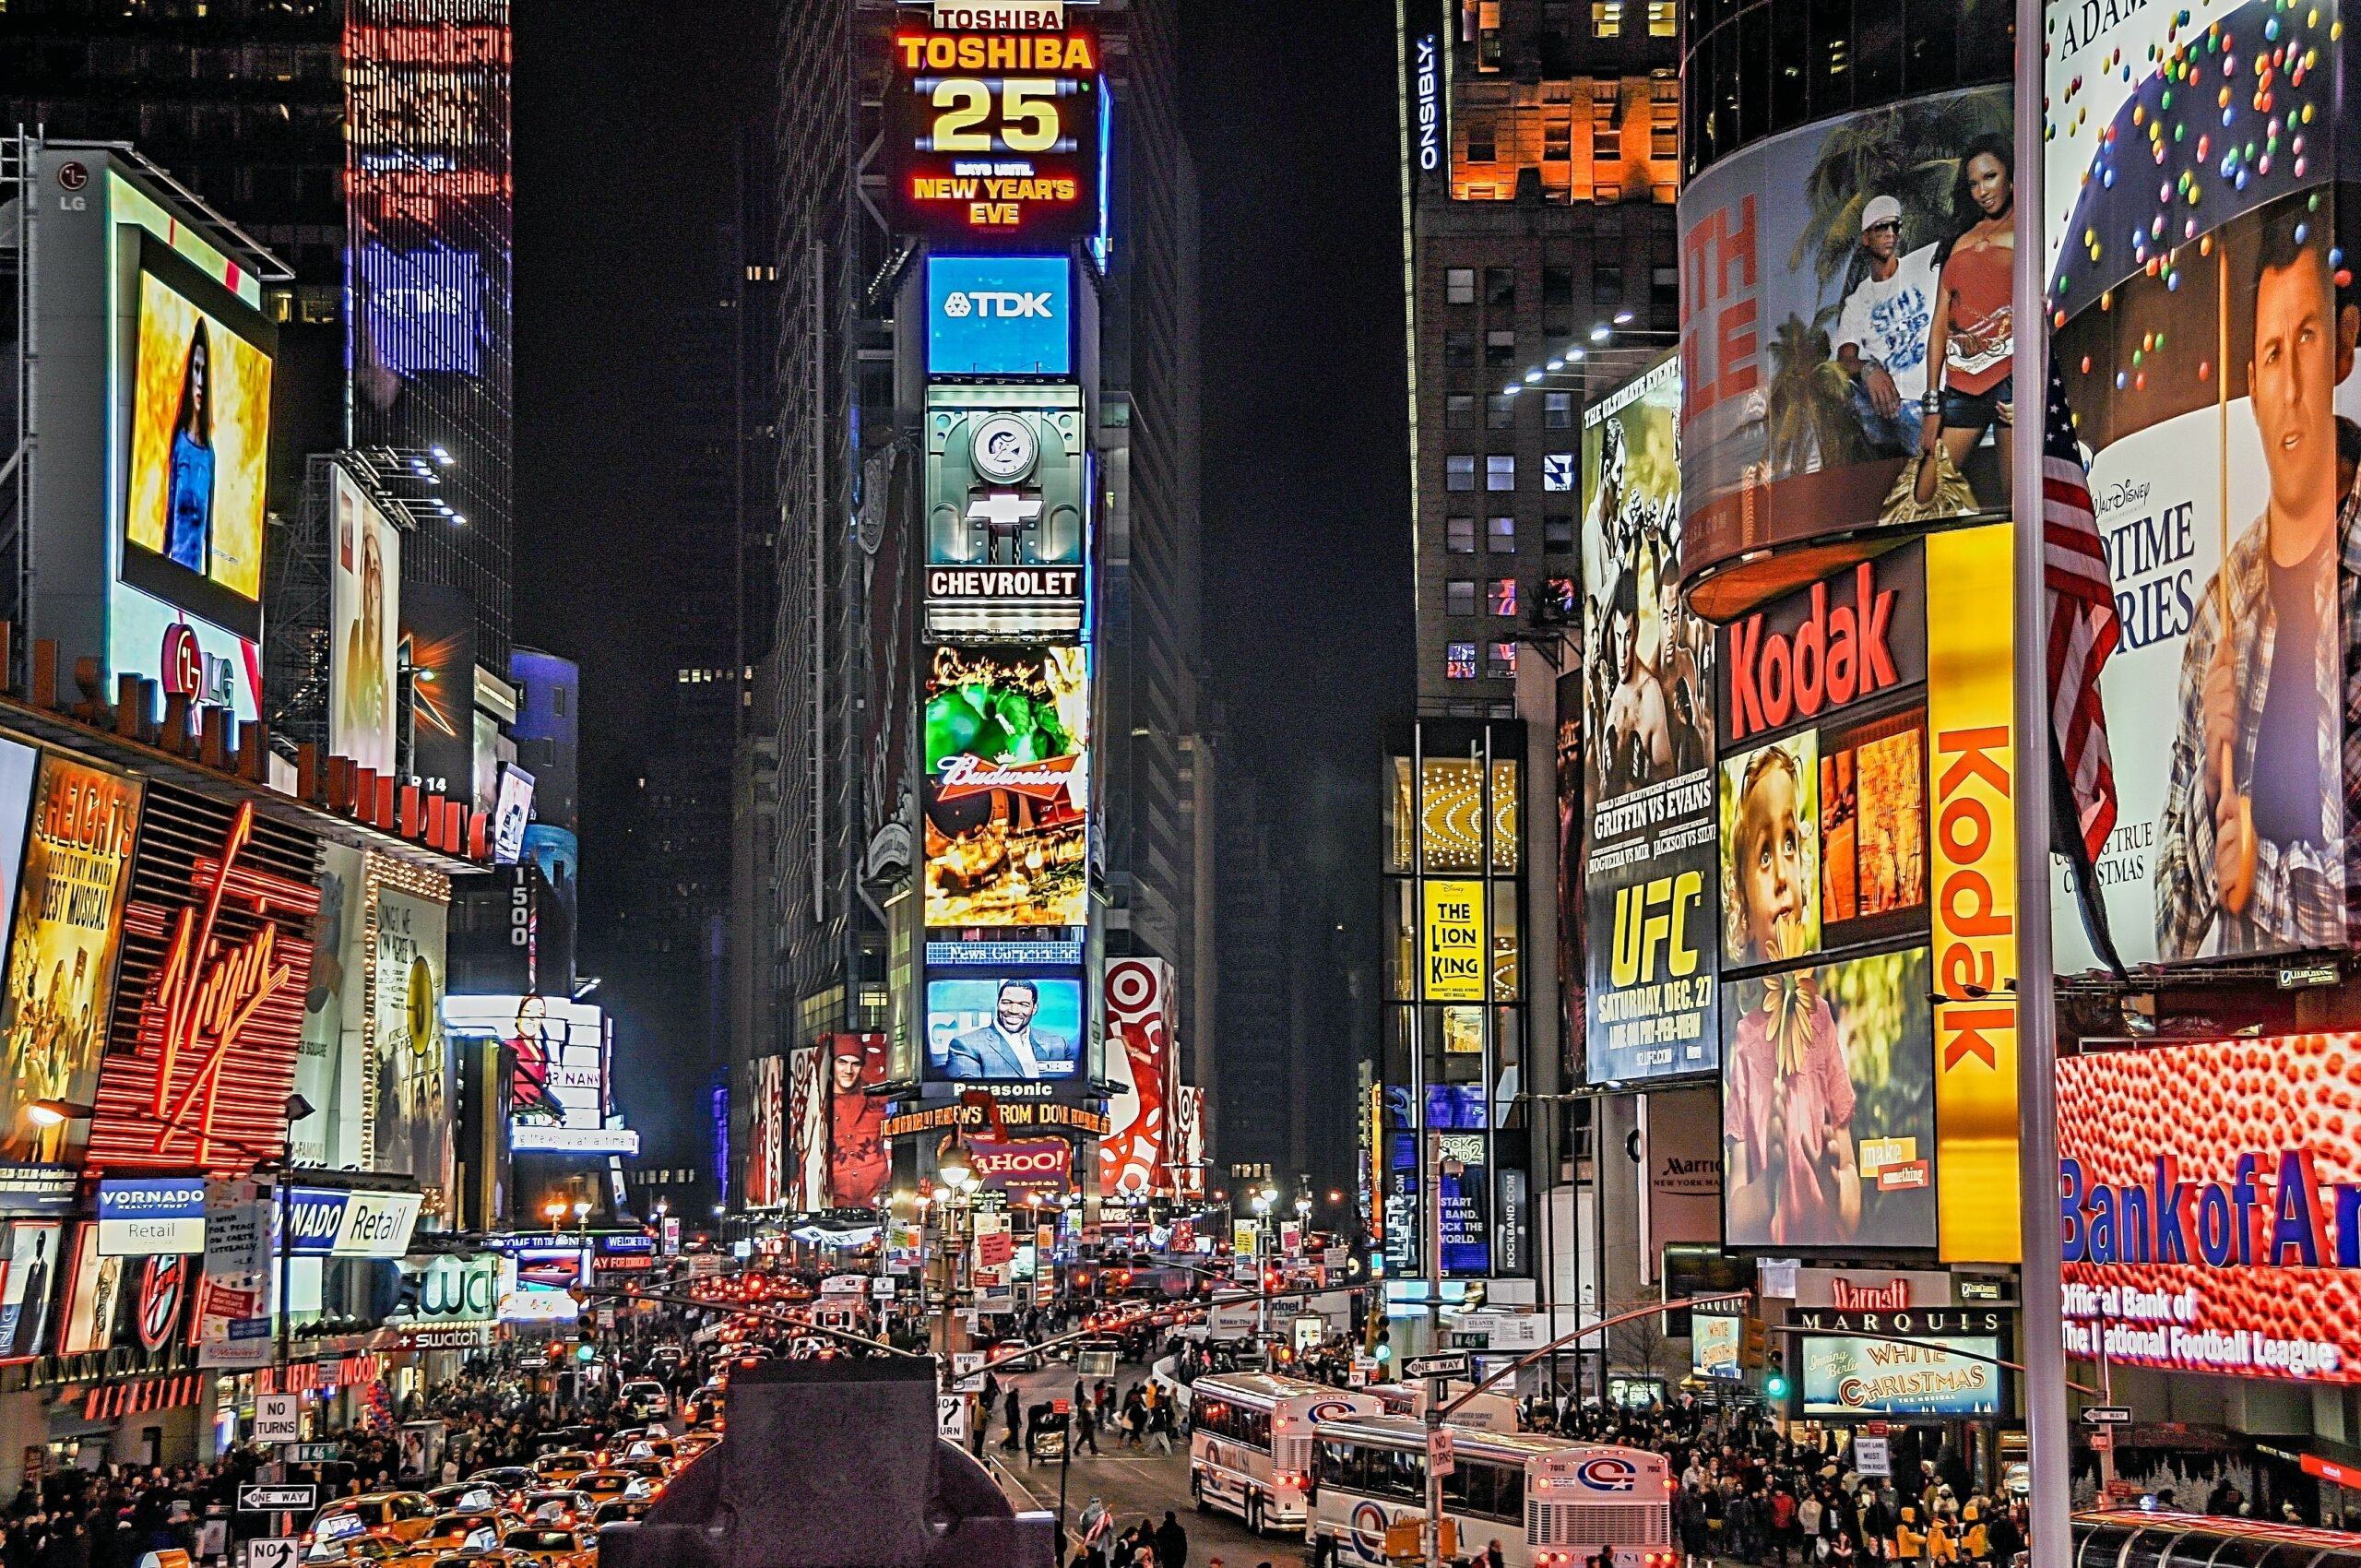 Times Square representando o passeio turístico de cada signo (escorpião)